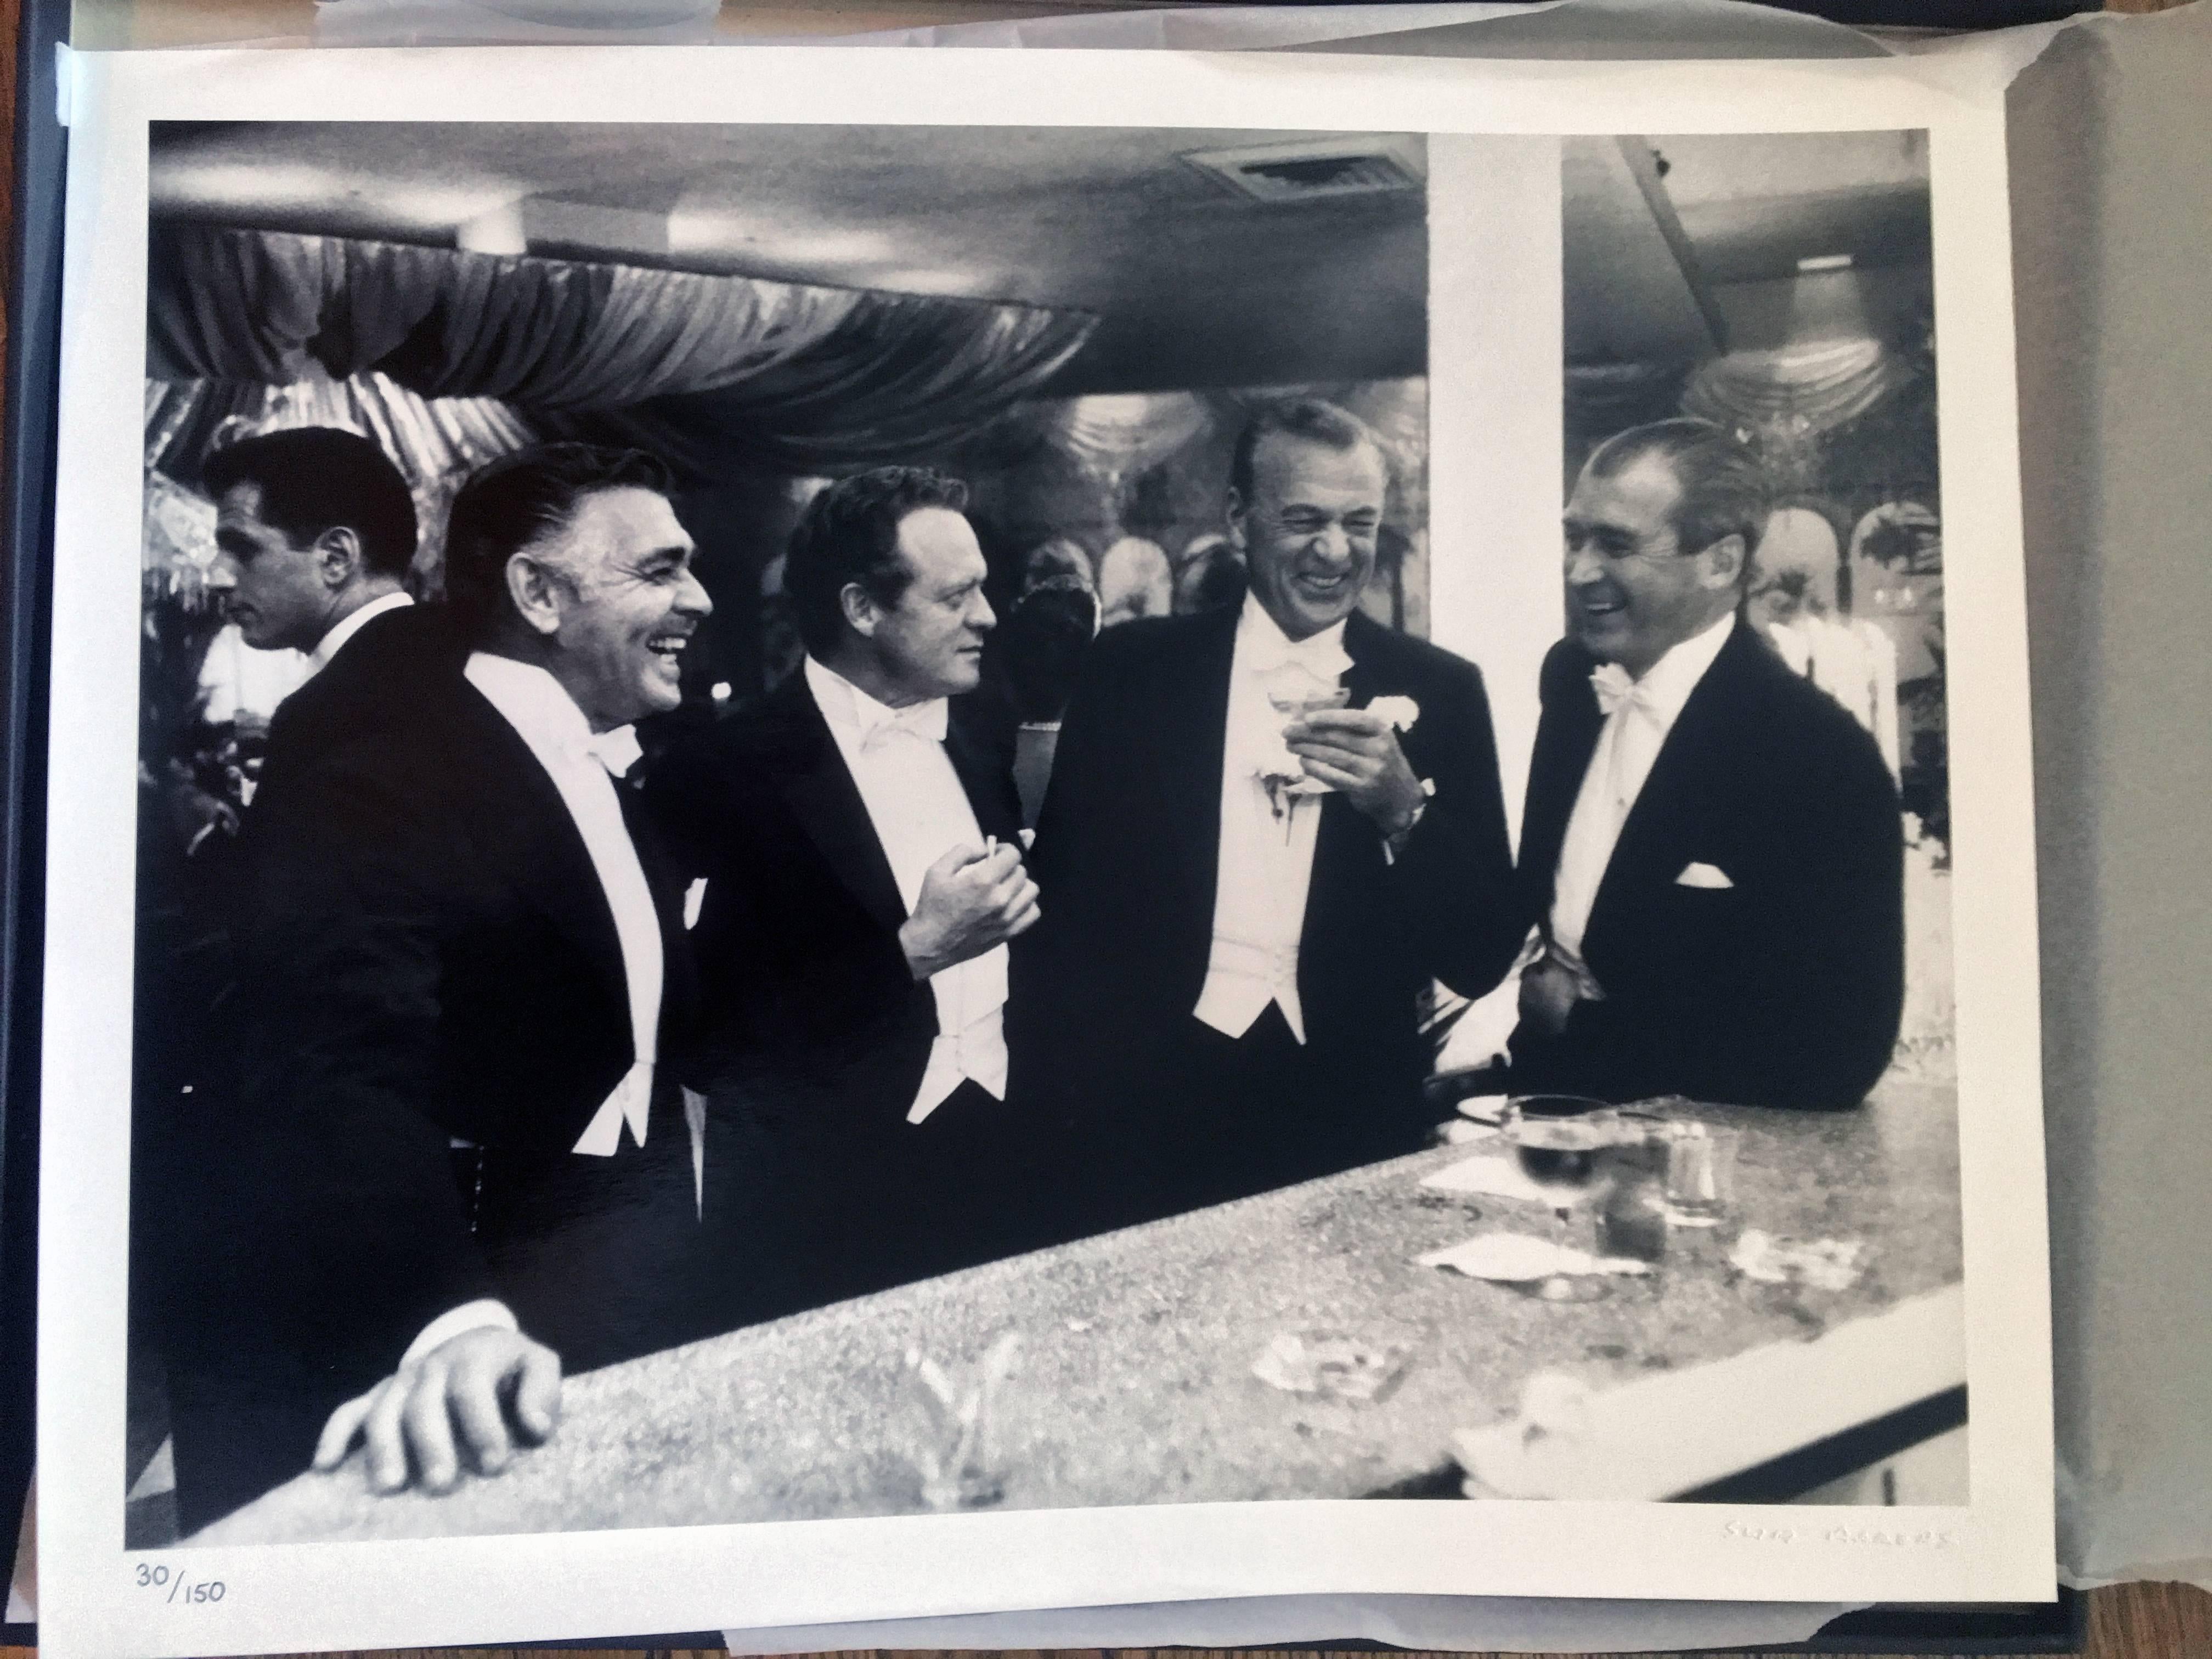 Reyes de Hollywood (Clark Gable, Gary Cooper, James Stewart, Van Heflin) - Photograph de Slim Aarons